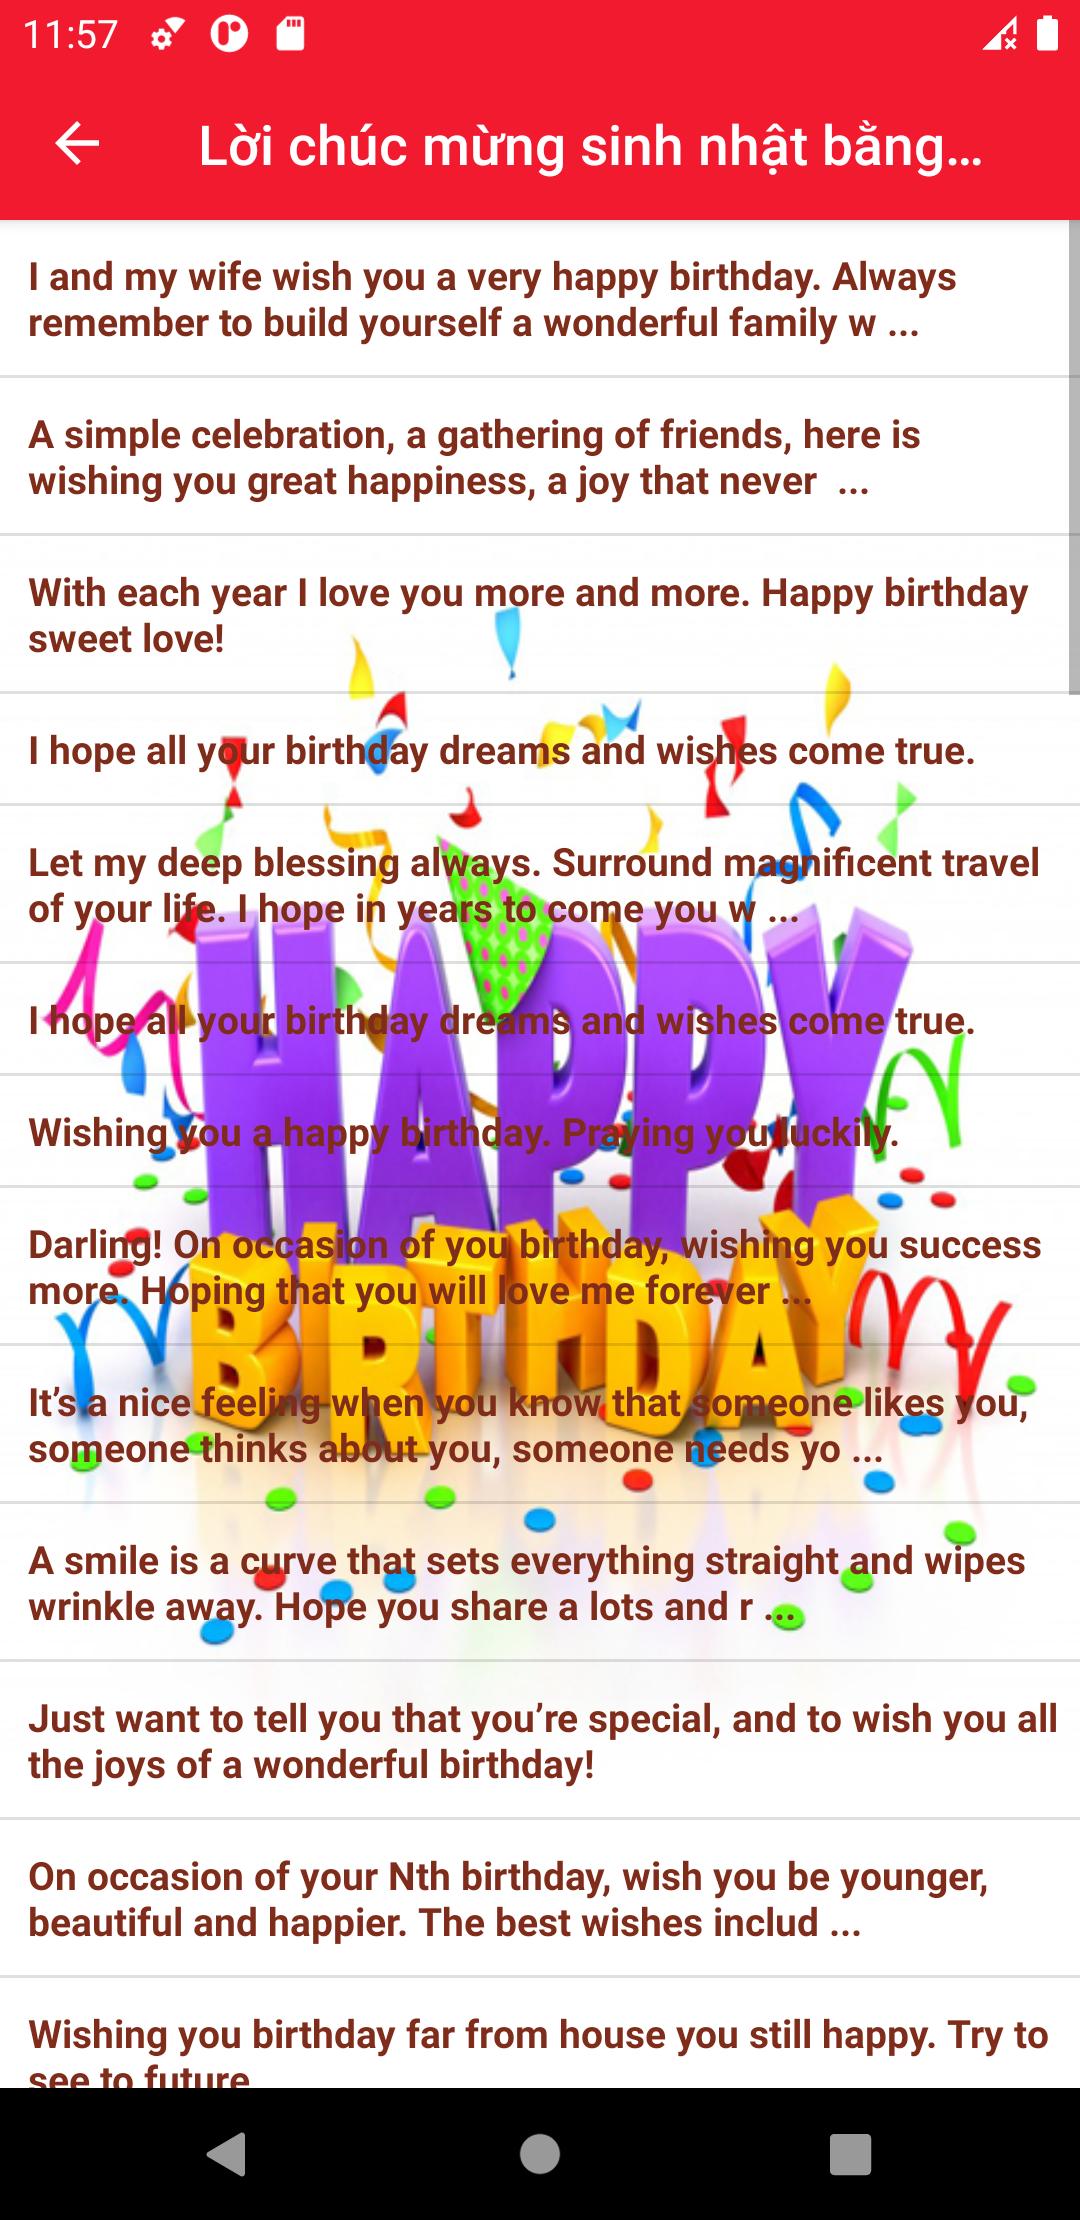 Lời chúc sinh nhật hay nhất - Birthday Wishes 10.22 Screenshot 16